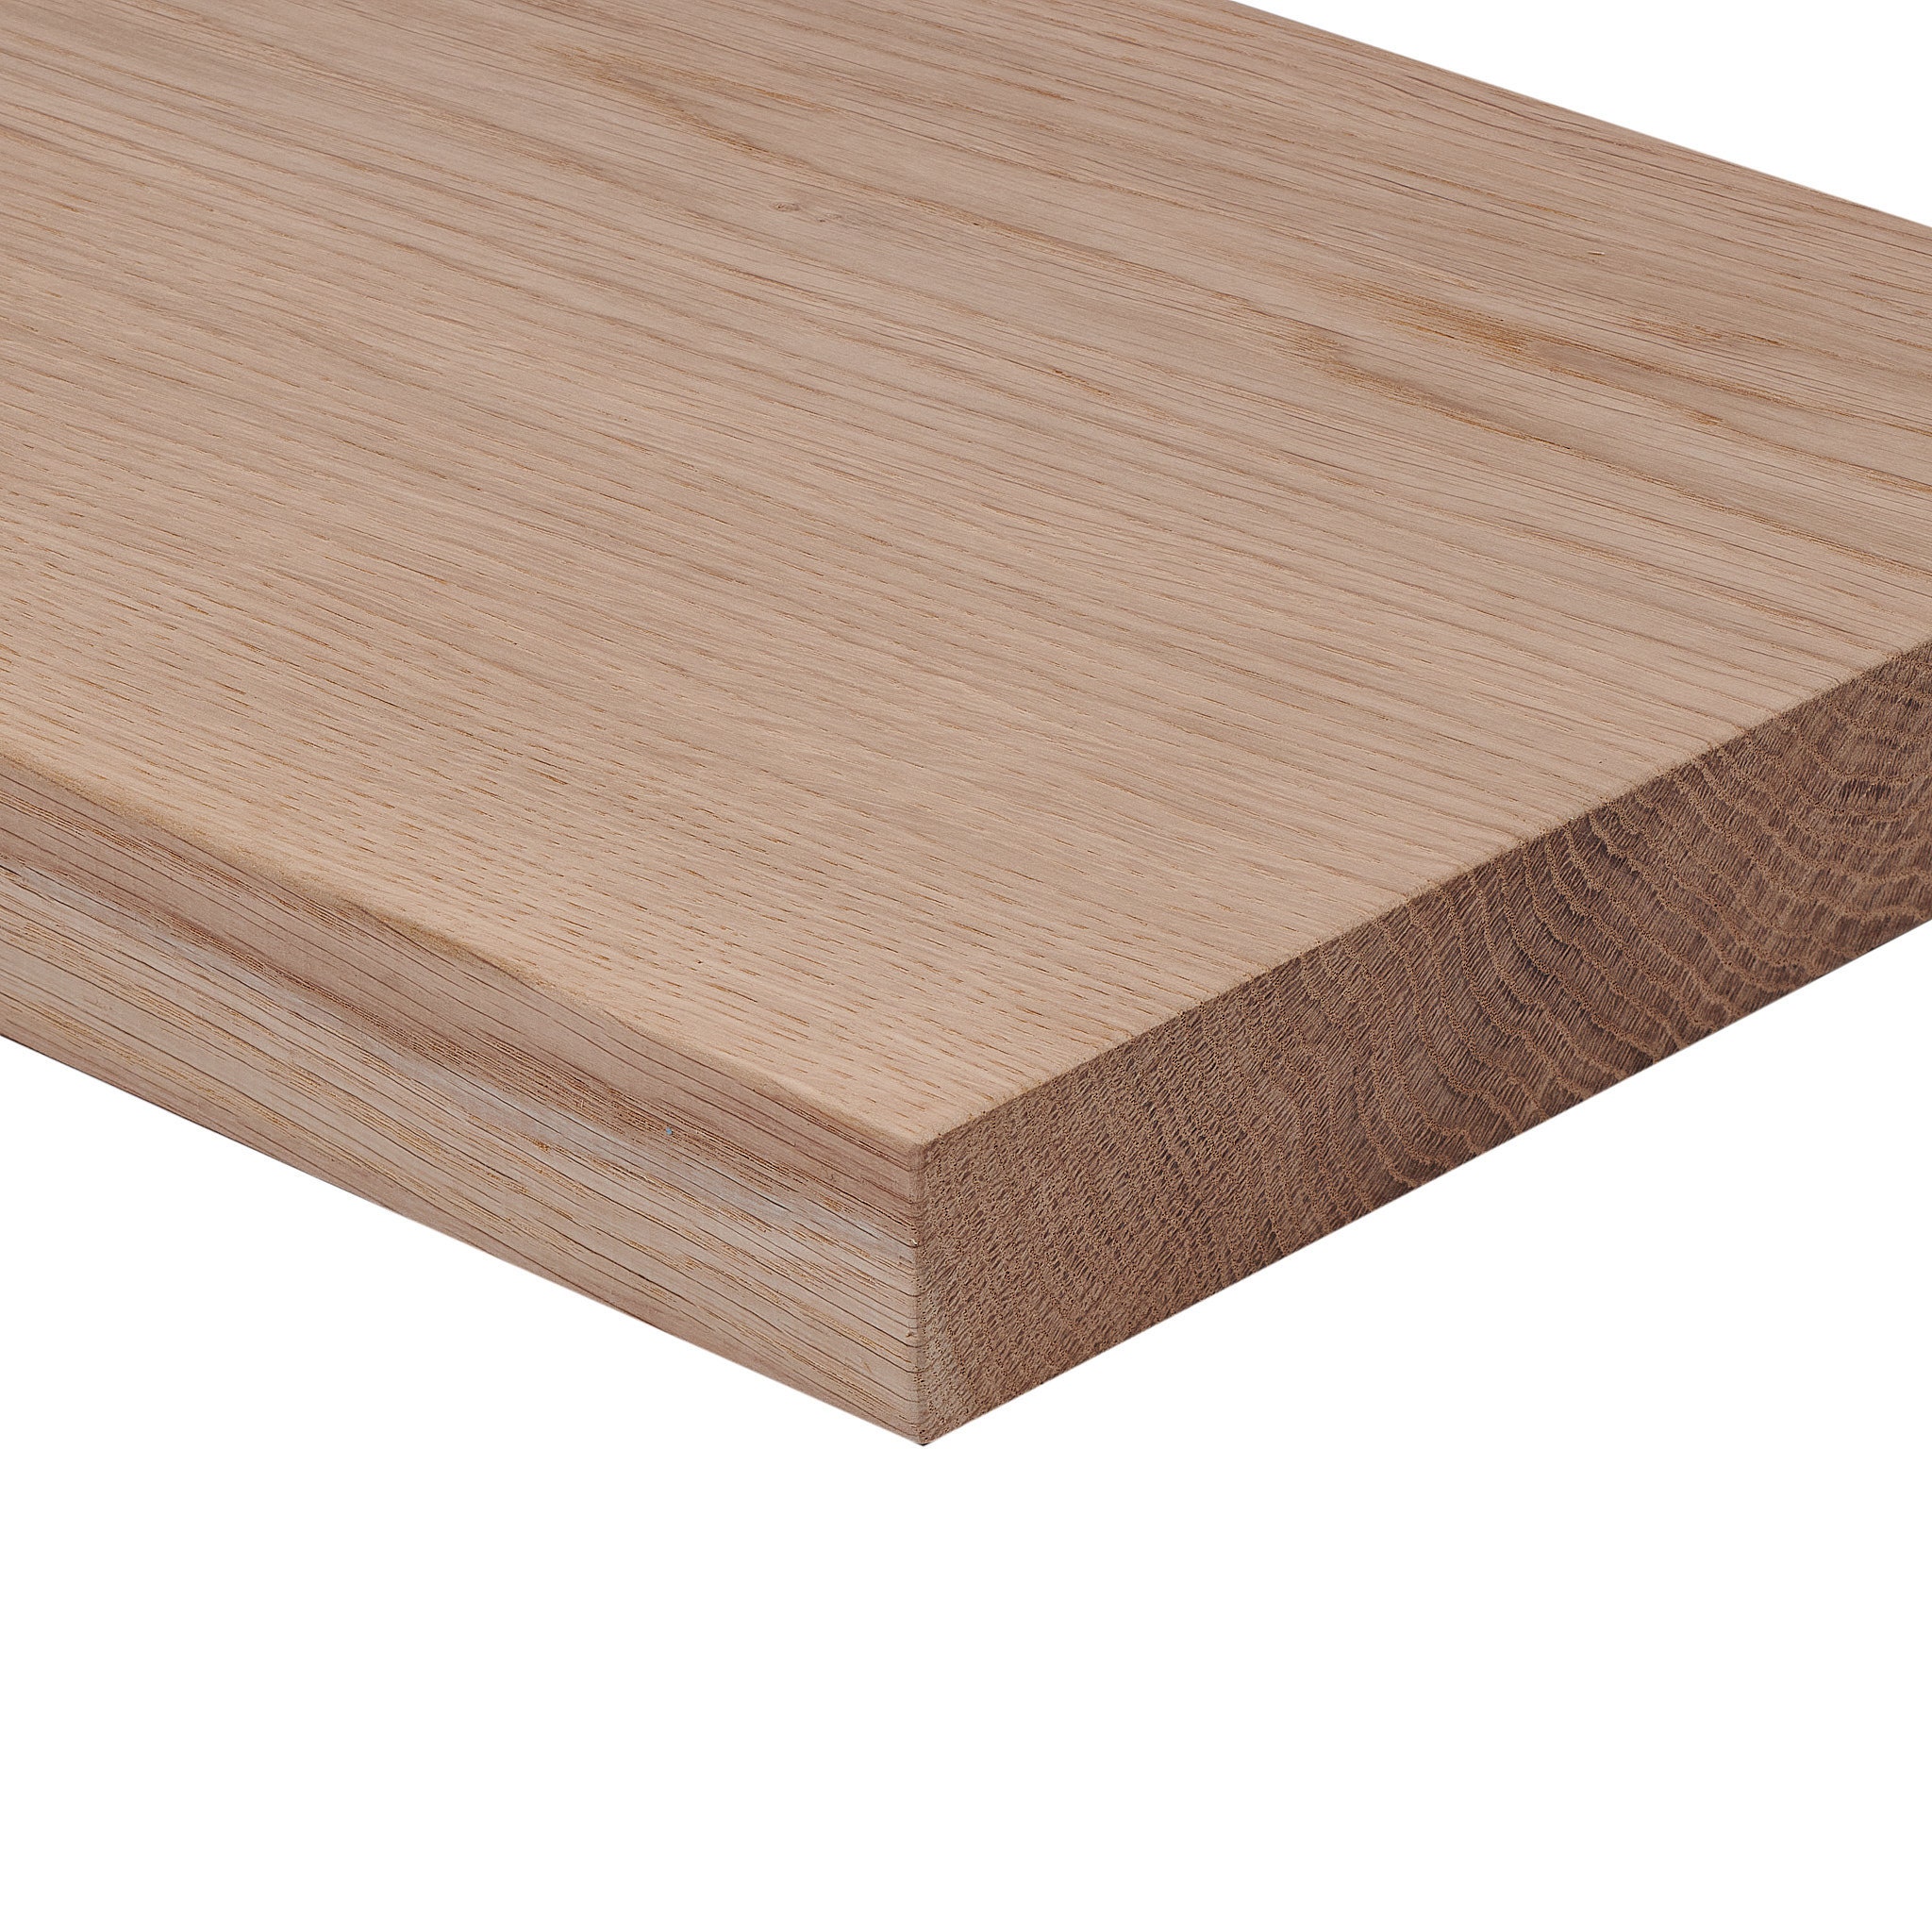 Tablero de madera de roble macizo de 35 mm en primera calidad, roble PAR  para muebles en varios tamaños -  España